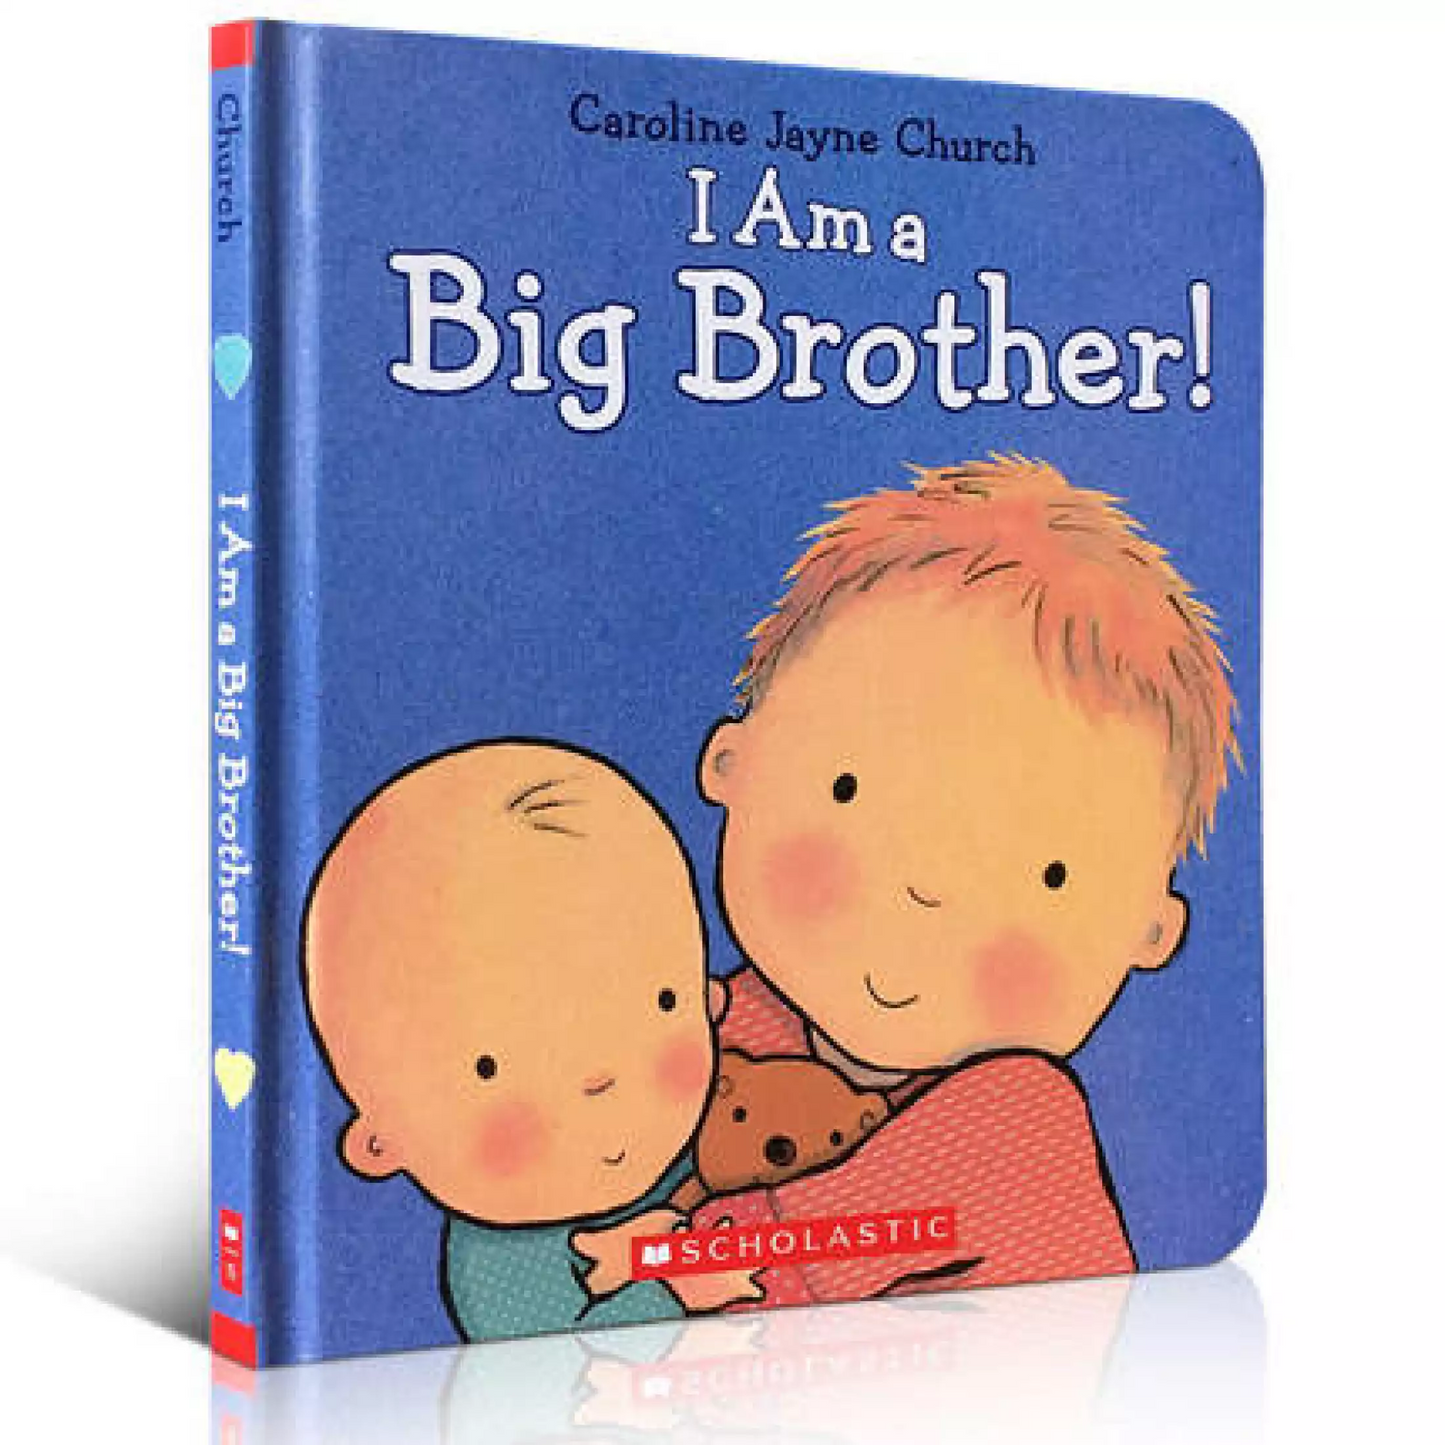 I am a Big Brother by Jayne Caroline Church